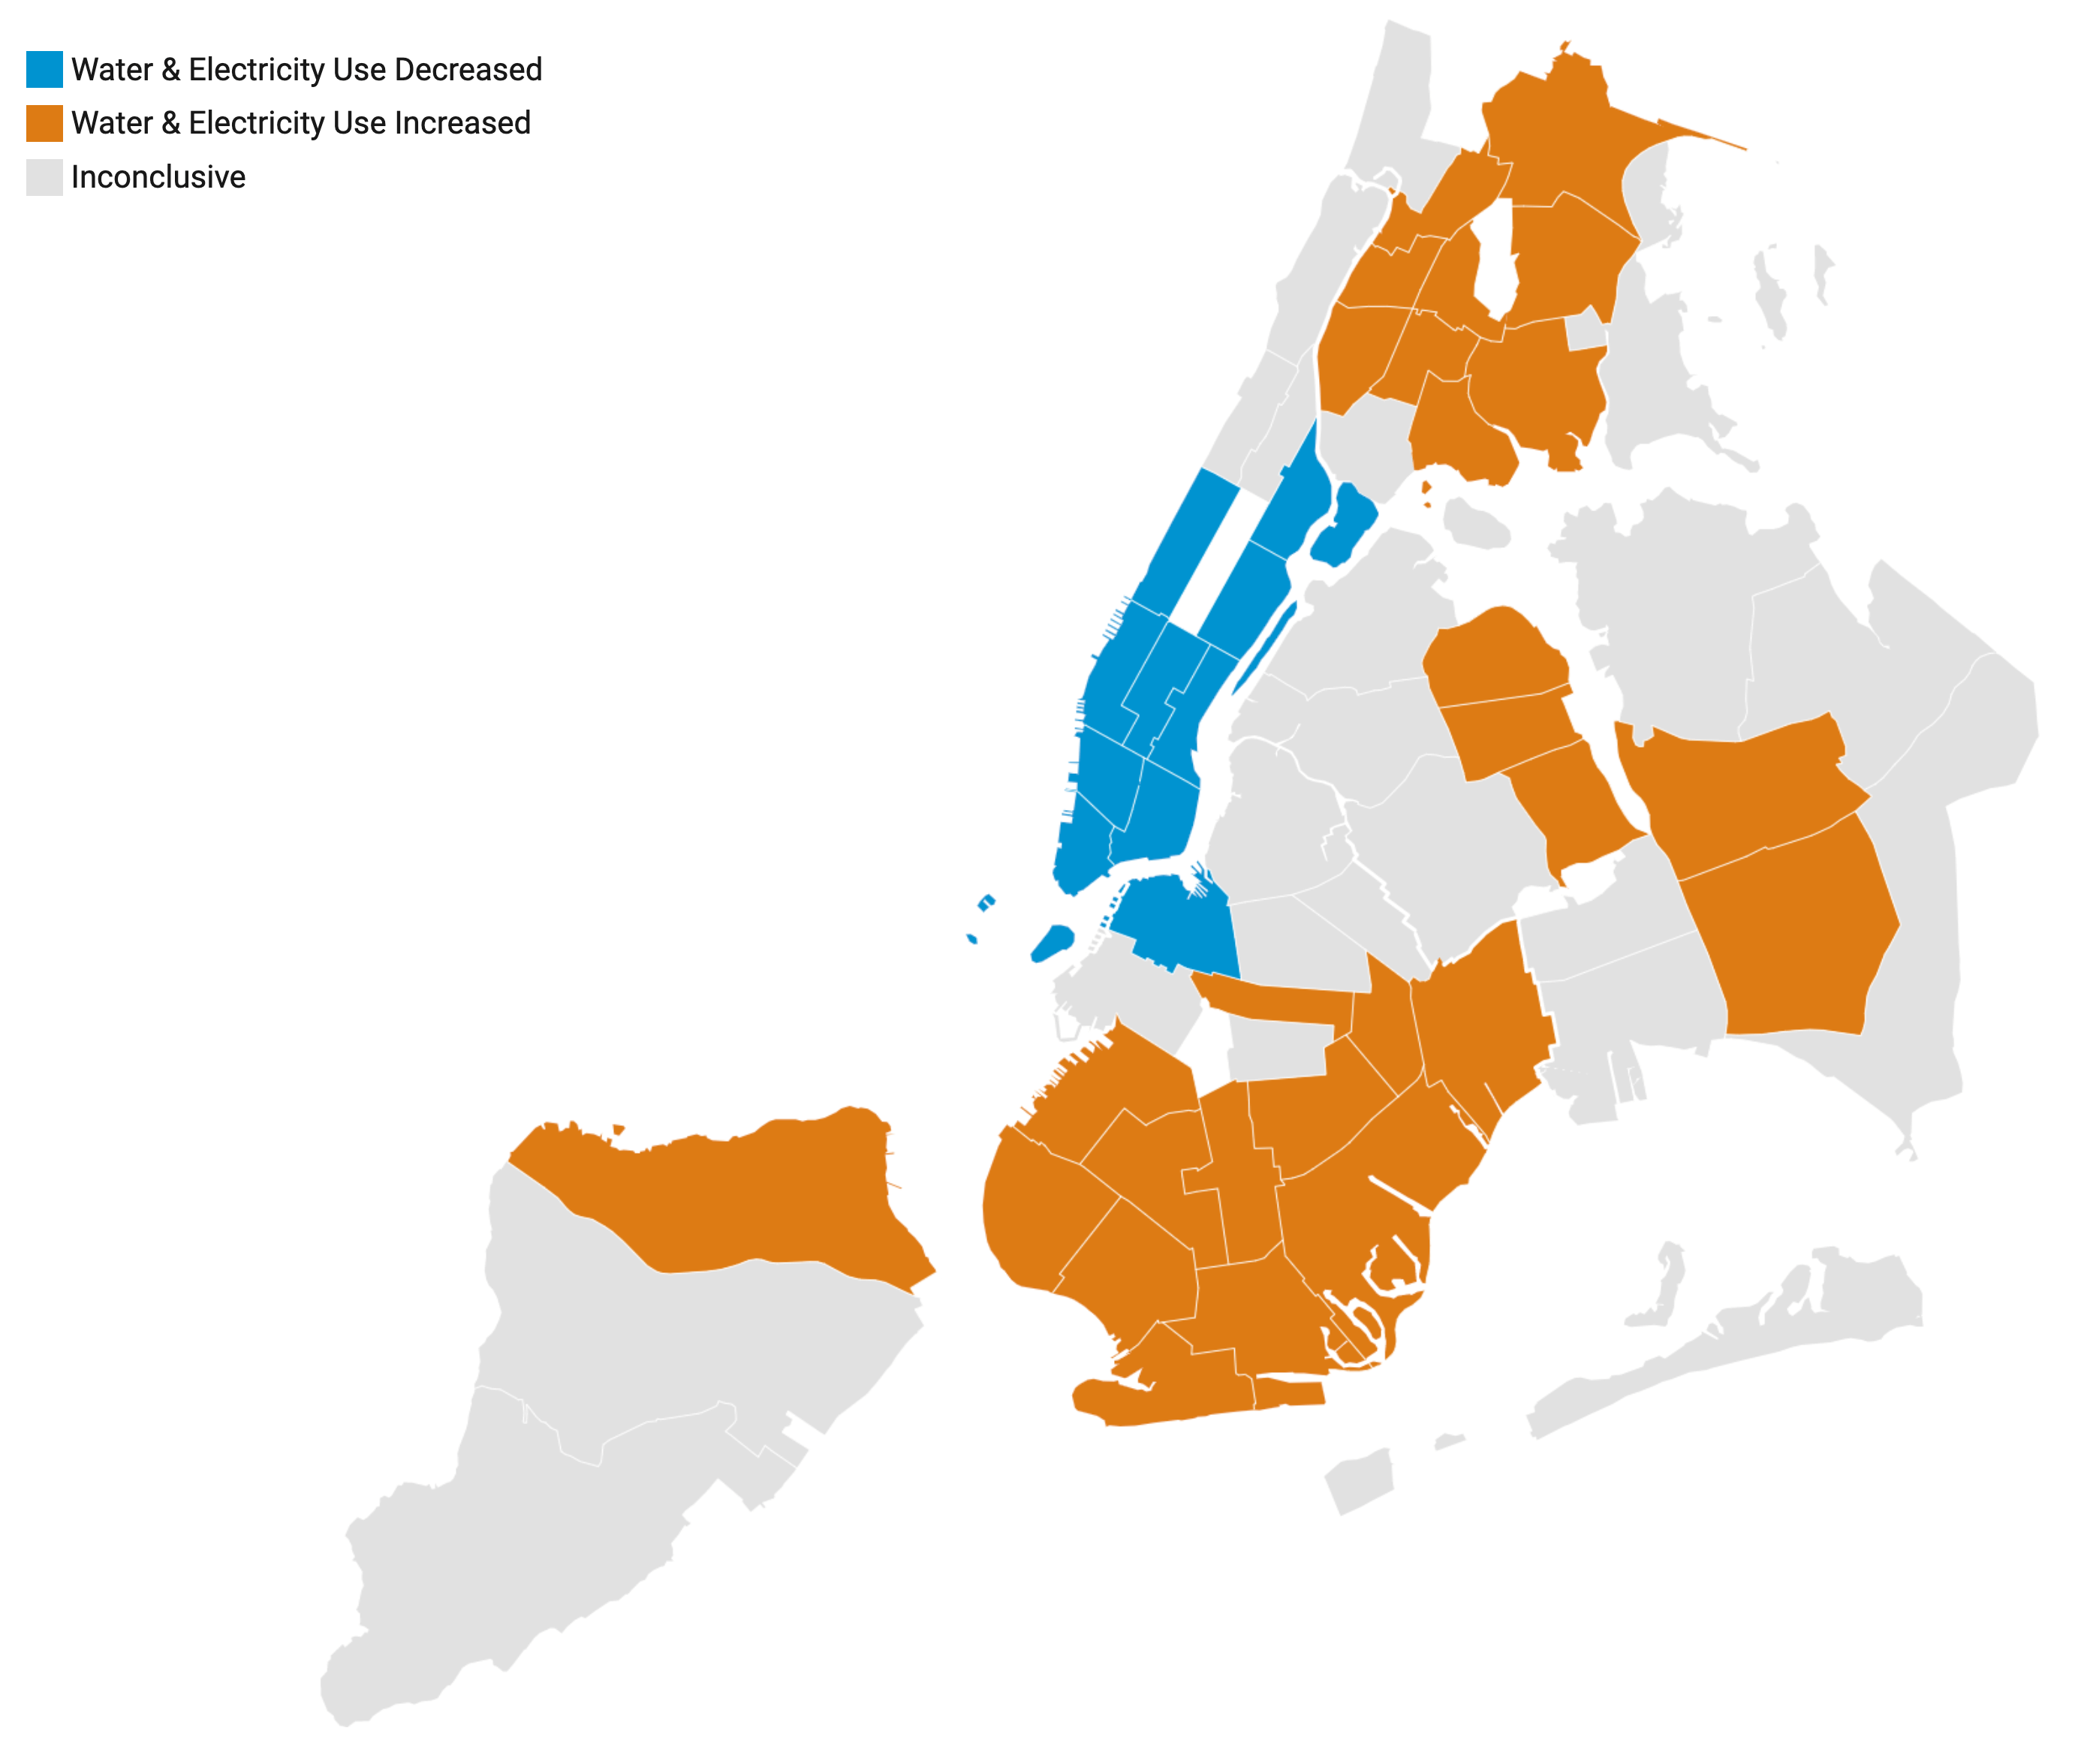 纽约市地图显示，曼哈顿的水和能源使用量减少，而外围社区的水和能源使用量增加。